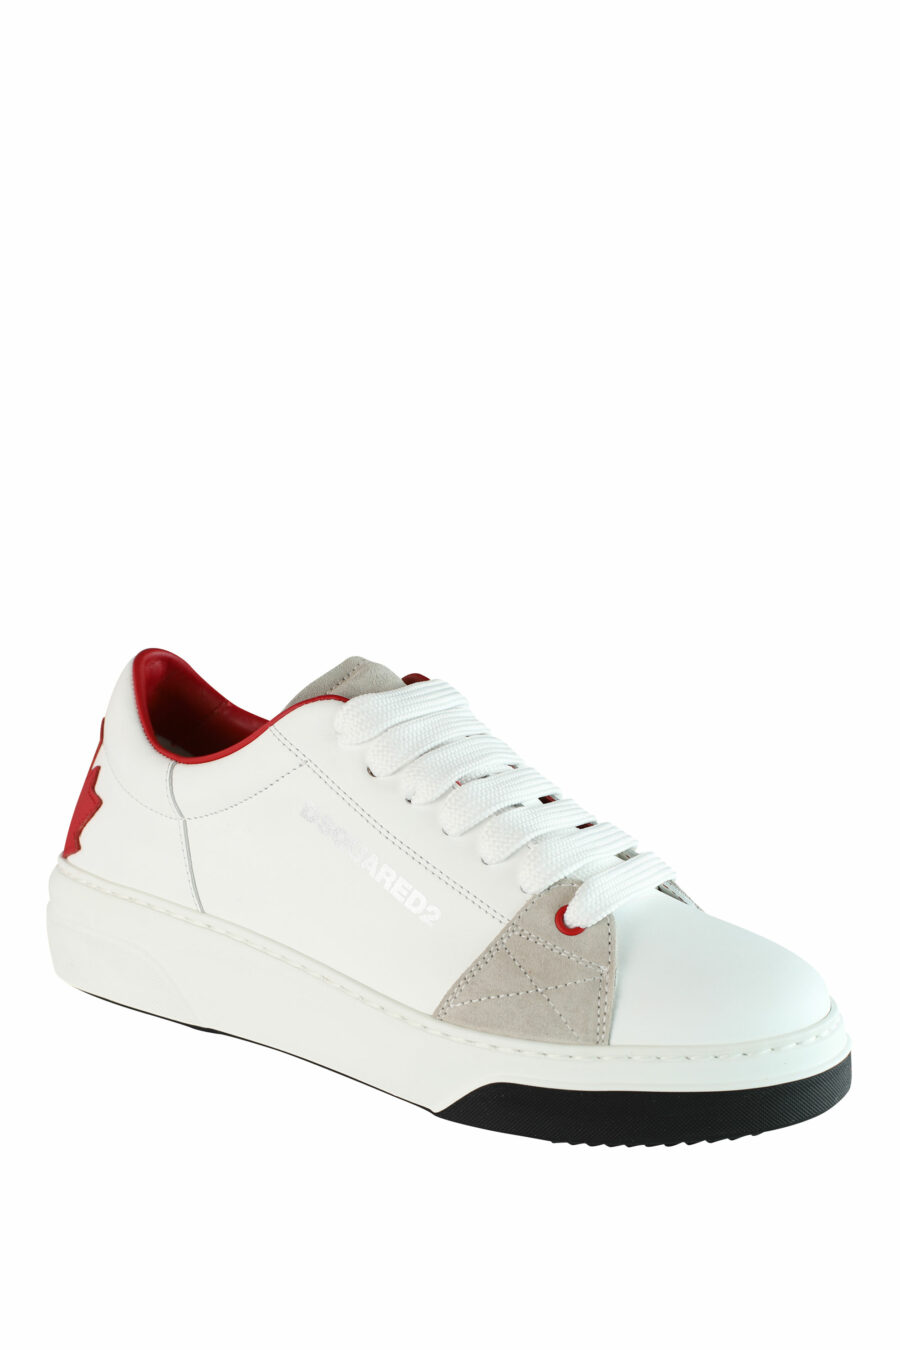 Zapatillas blancas con logo hoja roja y detalles beige - IMG 1438